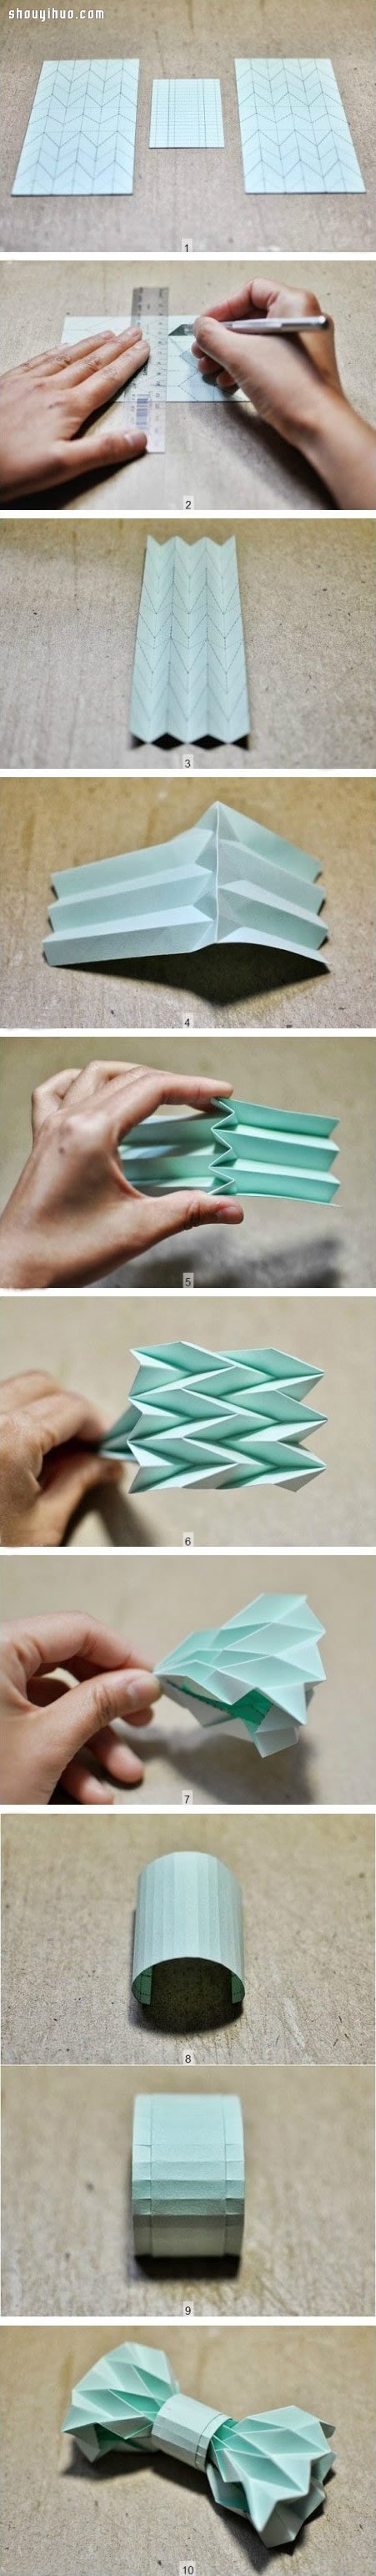 领结的折法 折纸DIY手工制作领花图解教程